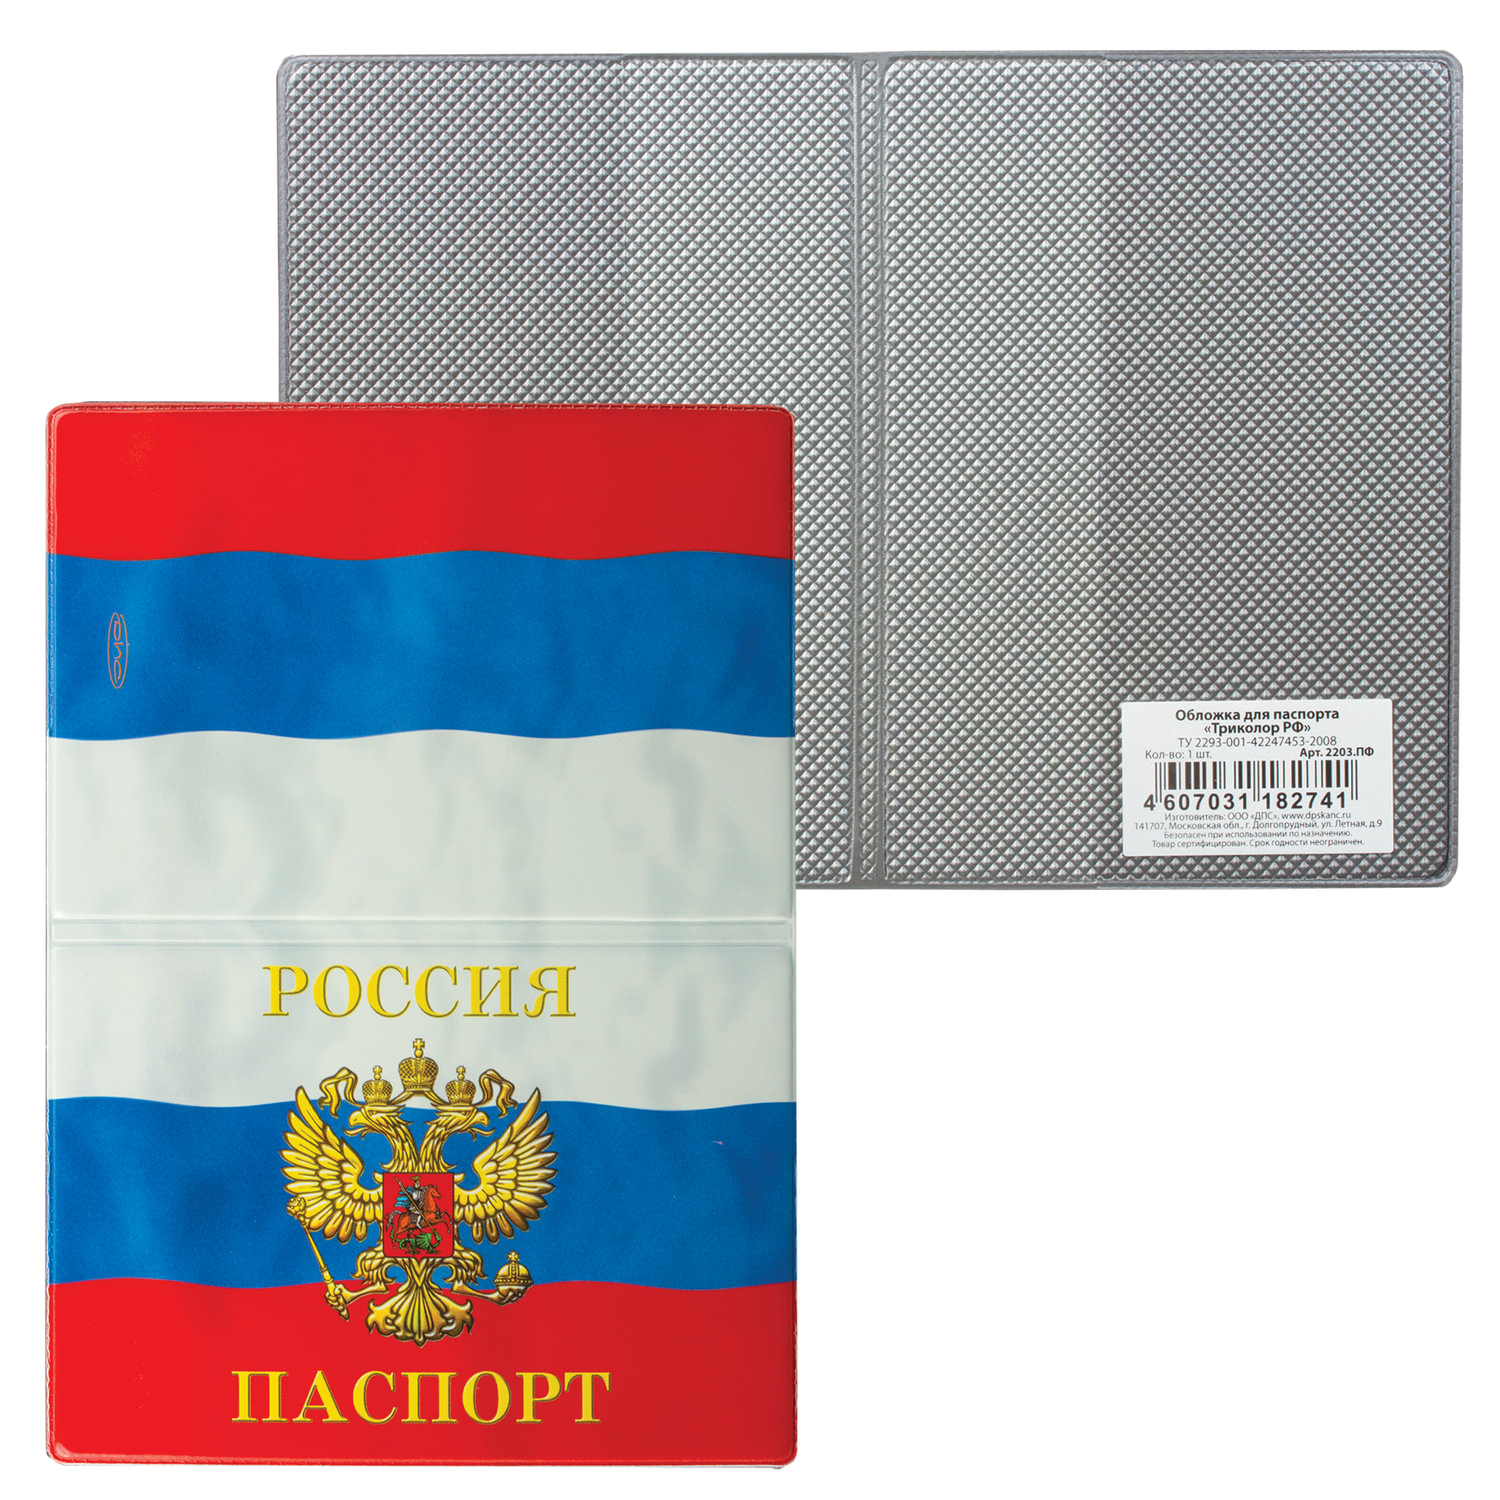 Обложка для паспорта Триколор, горизонтальная, ПВХ, цвета российского триколора, ДПС, 2203.ПФ, (12 шт.)